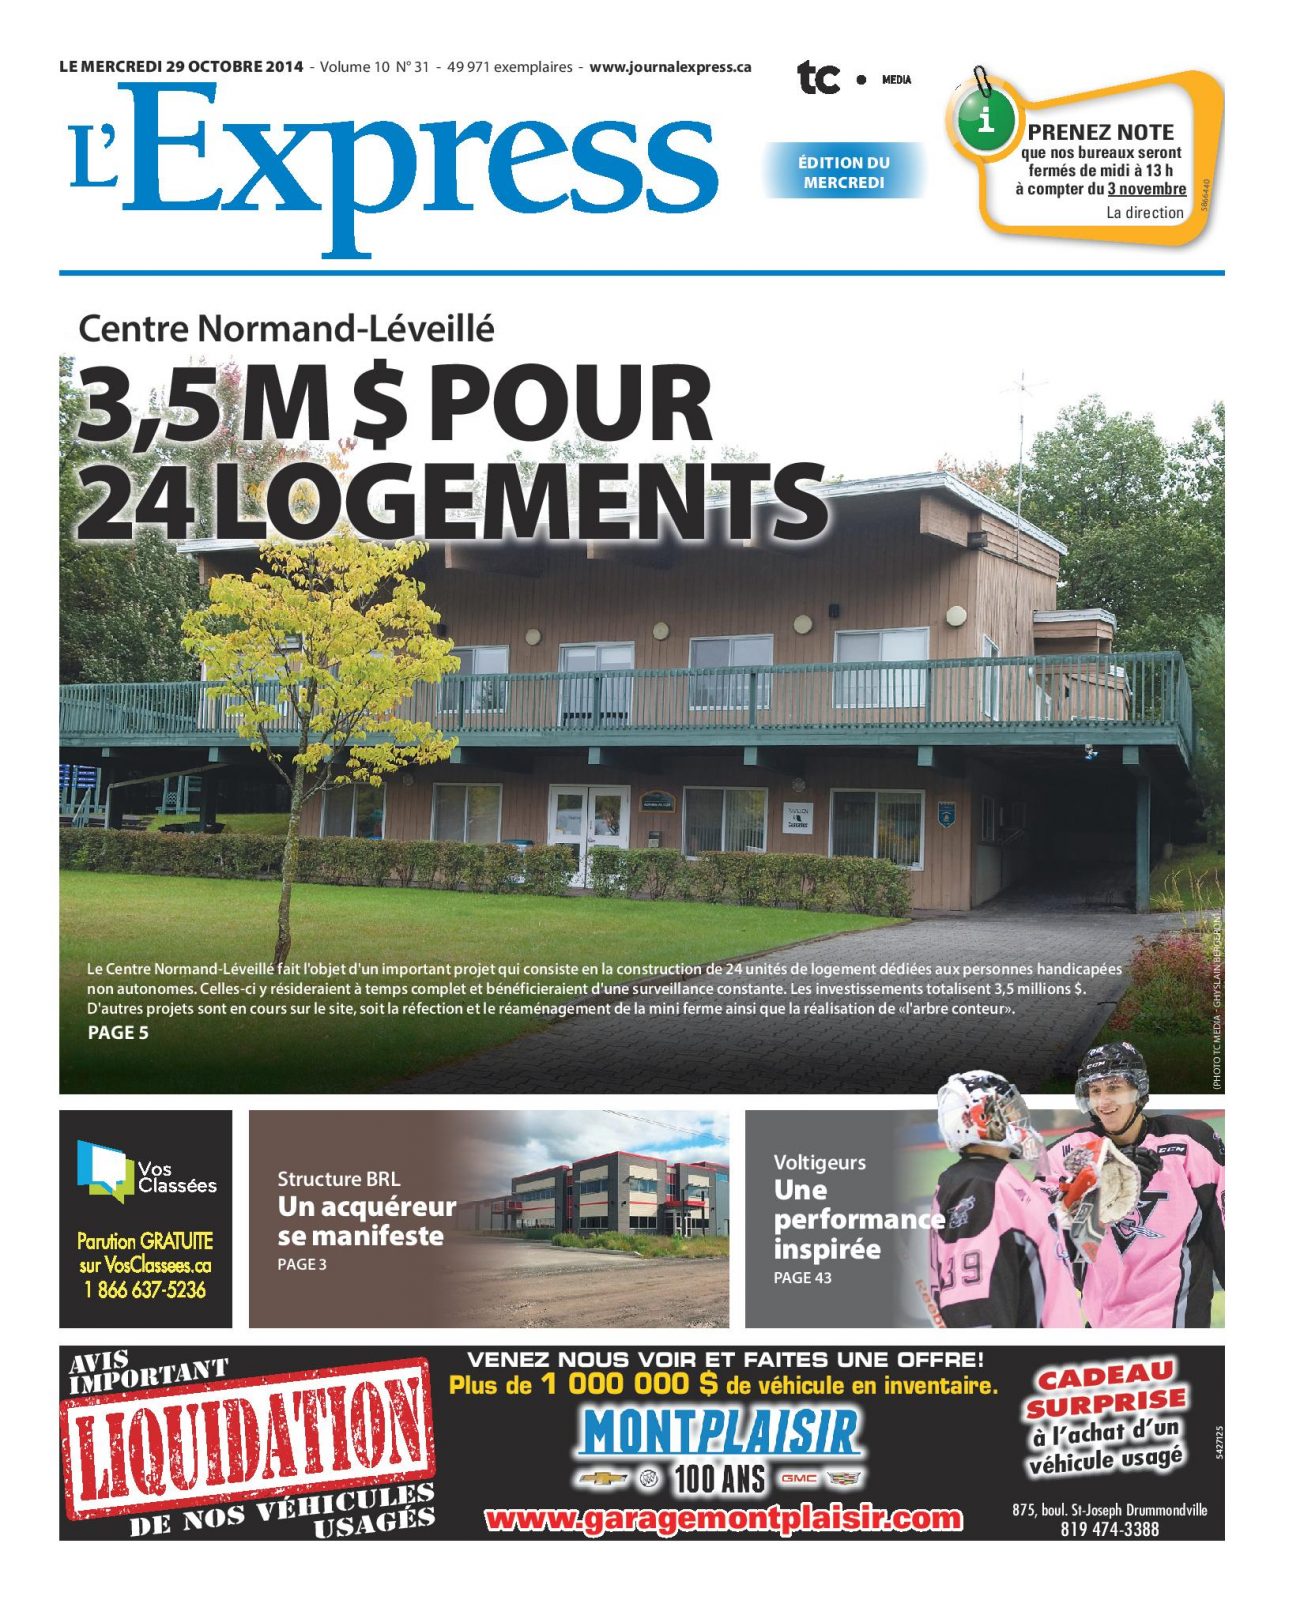 La une de L’Express du mercredi 29 octobre 2014